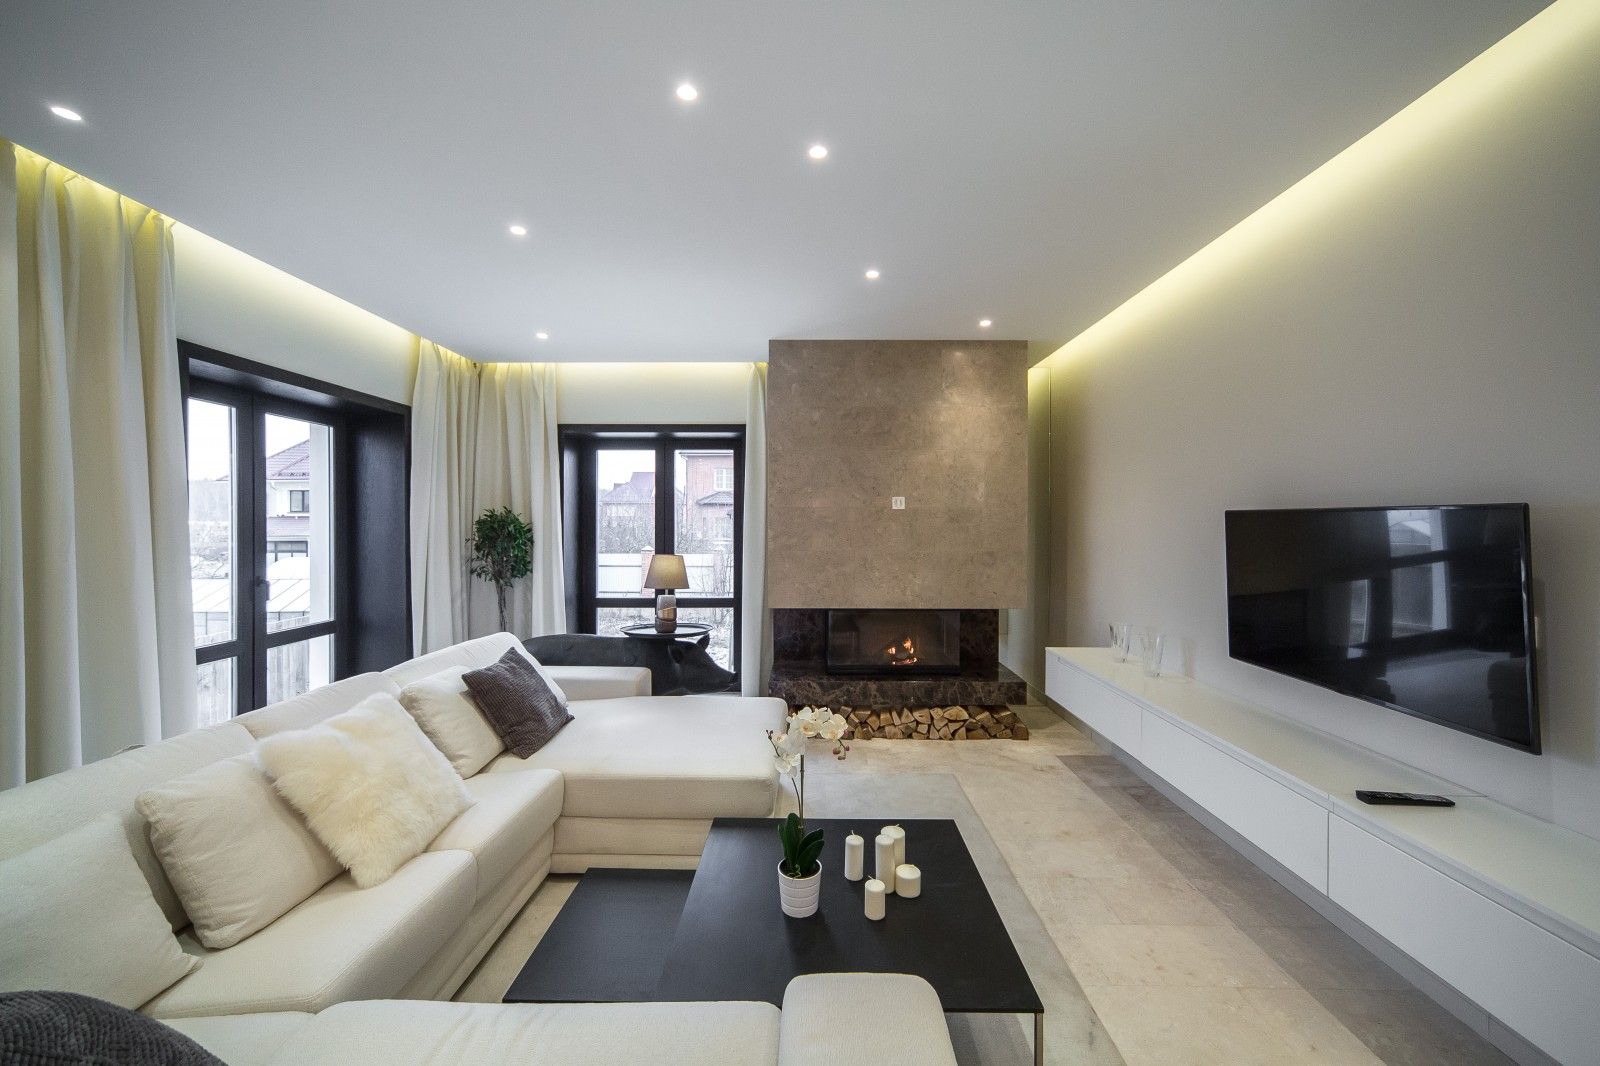 Как использовать окна и свет в интерьере дома для создания теплой атмосферы